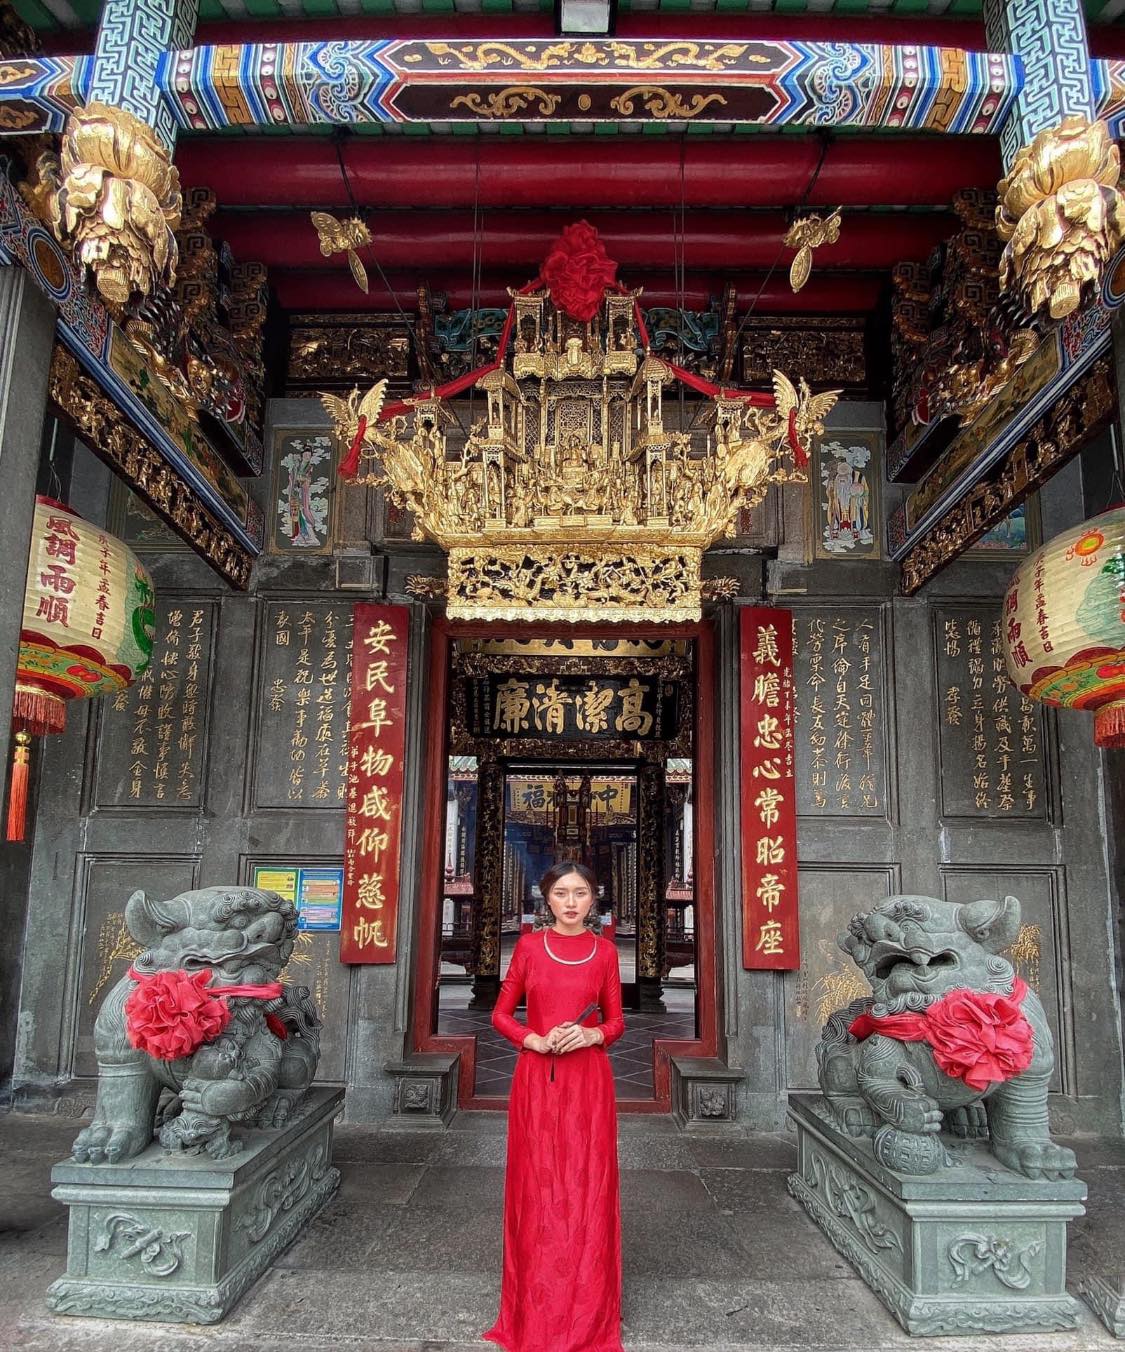 Chùa Ông và Chùa Bà Thiên Hậu Quận 5 - điểm đến linh thiêng và có kiến trúc độc đáo của Sài Gòn xưa